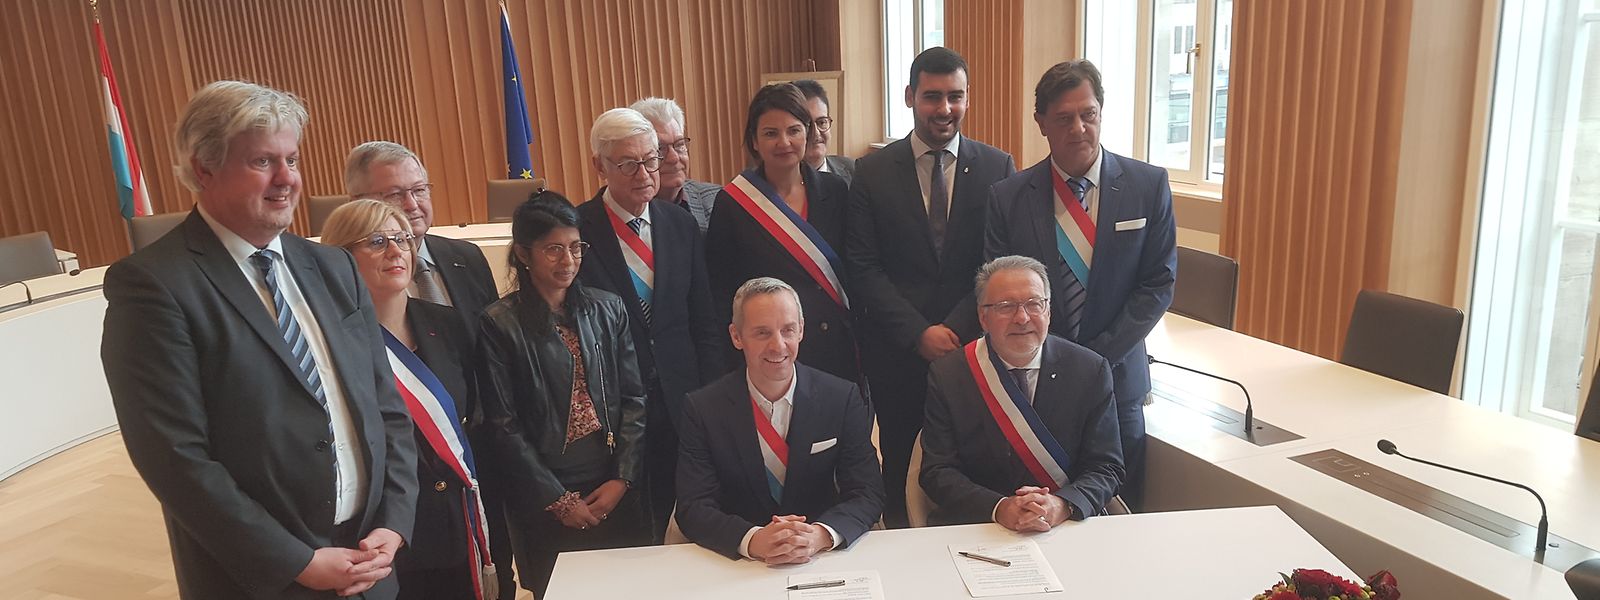 La convention de coopération et de partenariat entre les villes d'Esch-sur-Alzette et Thionville a été signée mardi matin. 